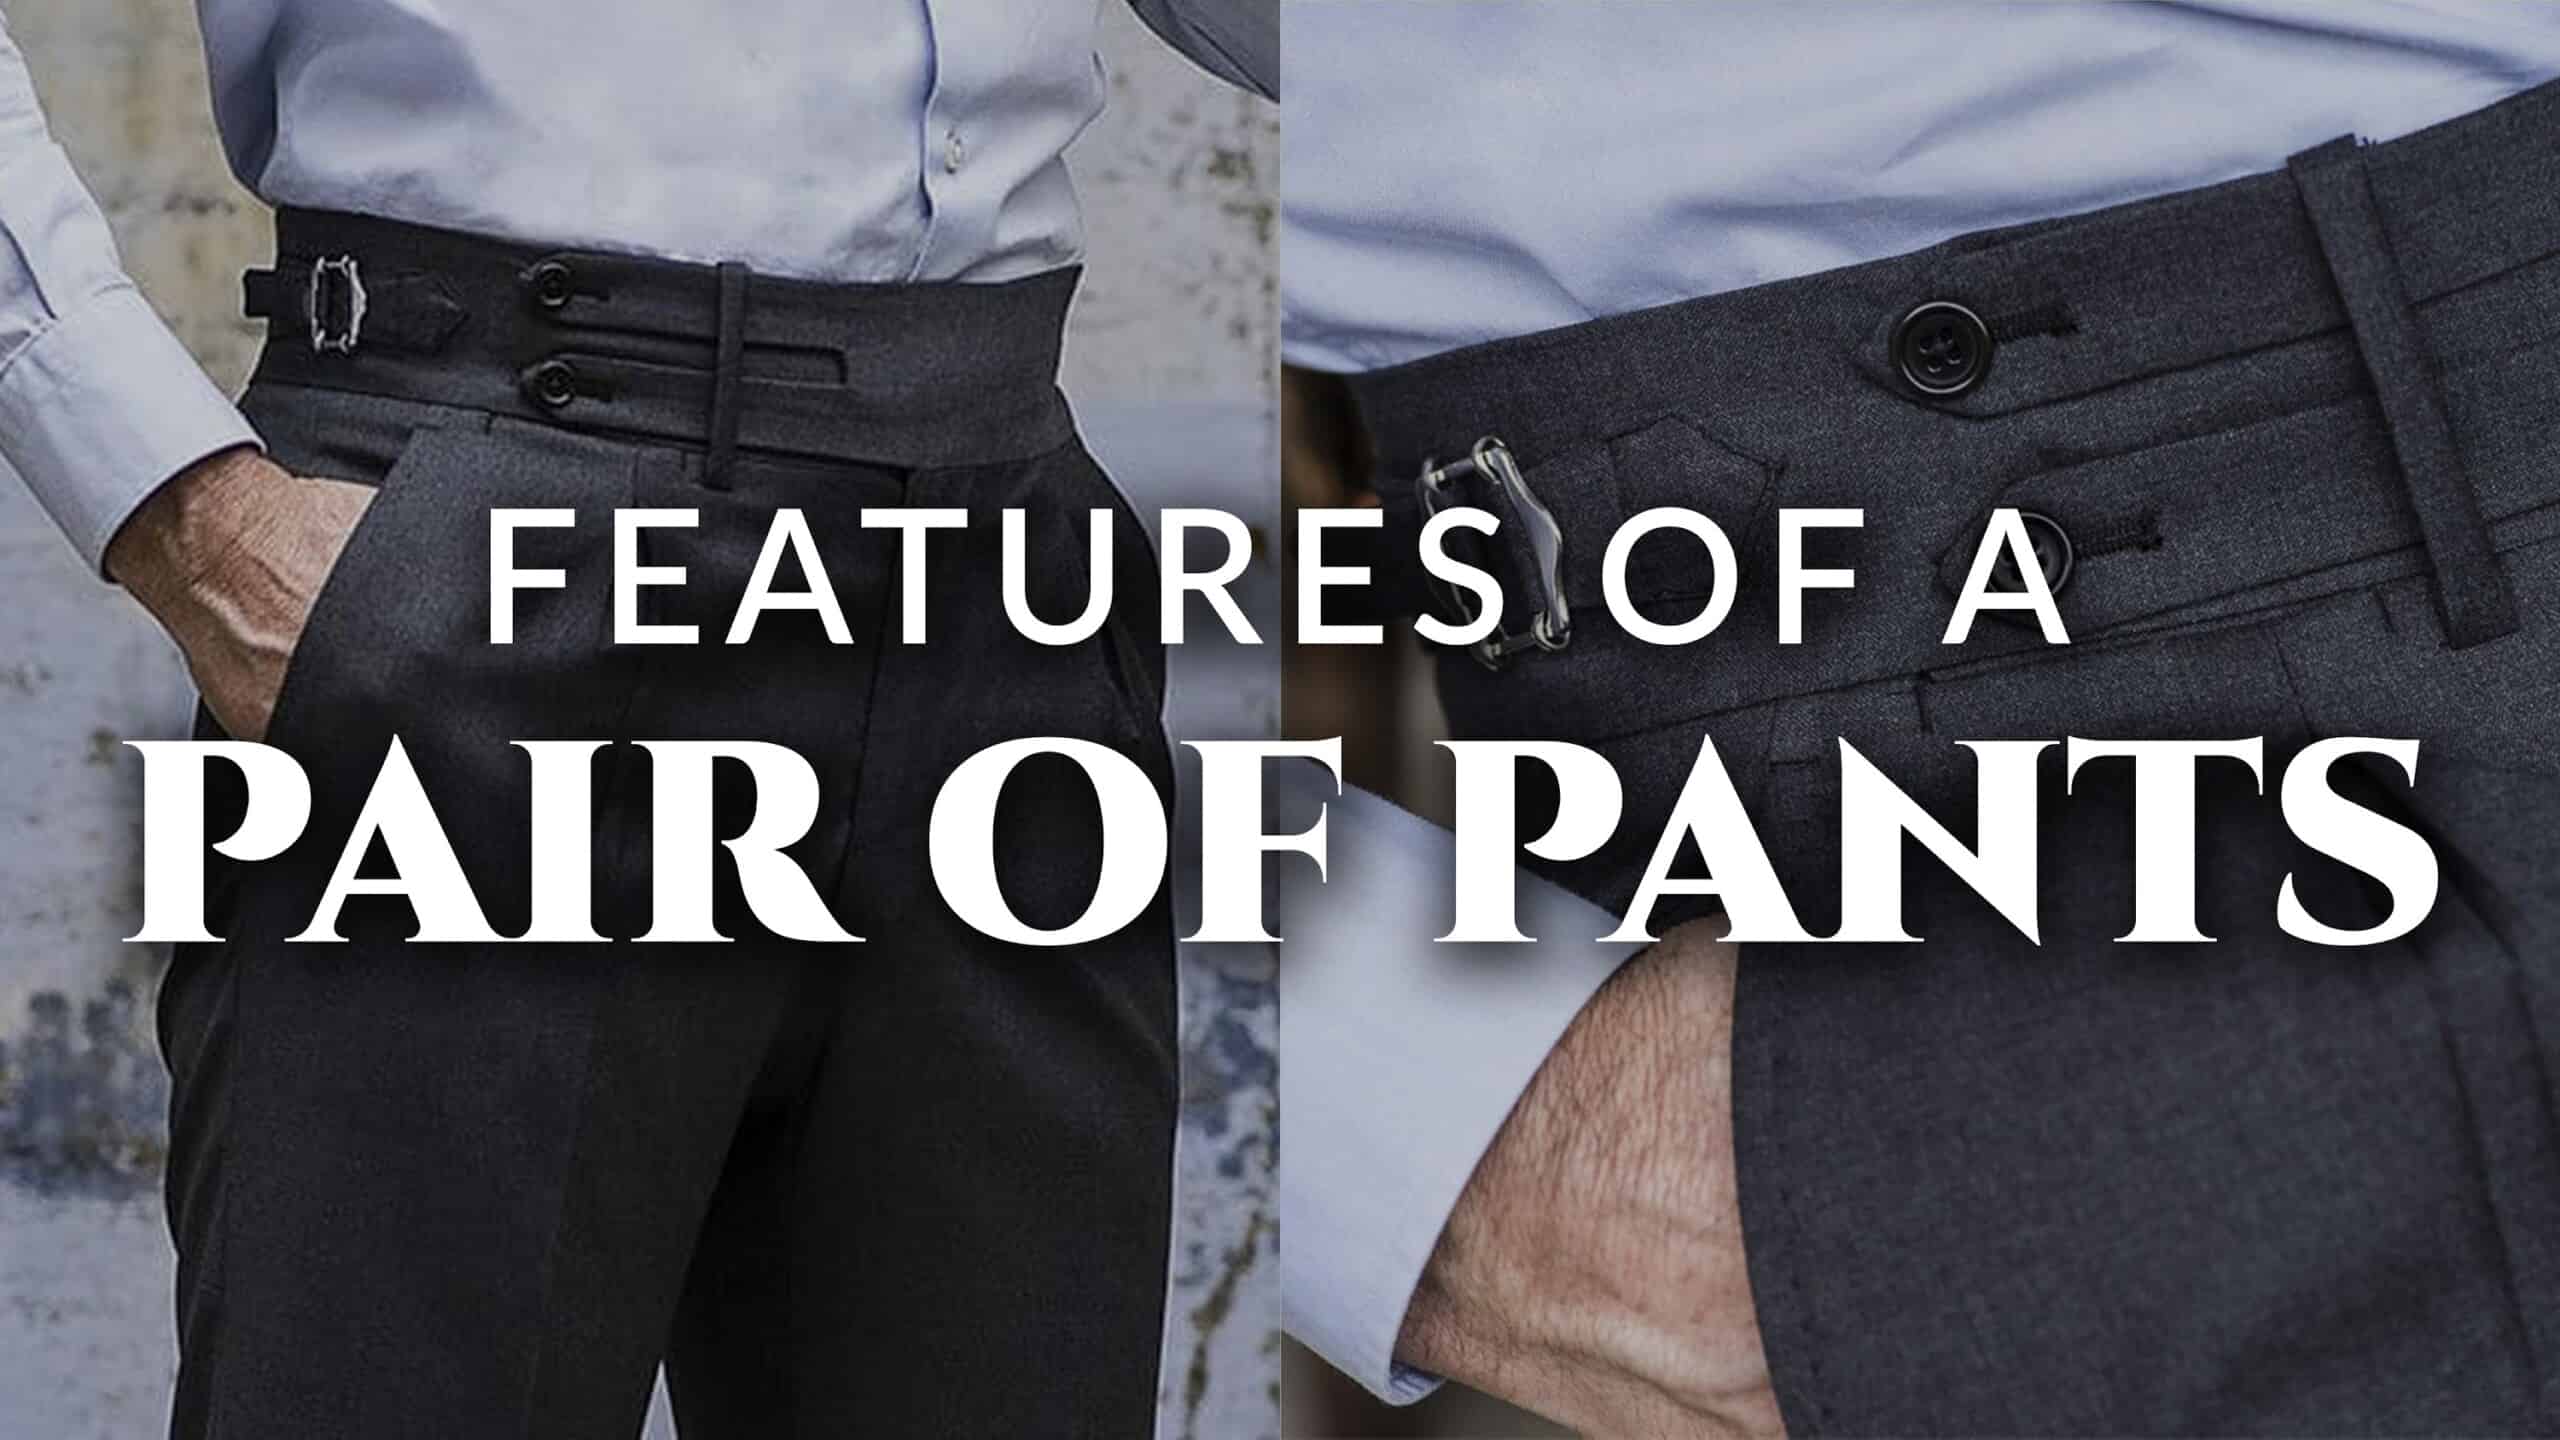 Grey Extension & Button Pants Shorts Jeans Trouser Waist Expander Extend Size B 